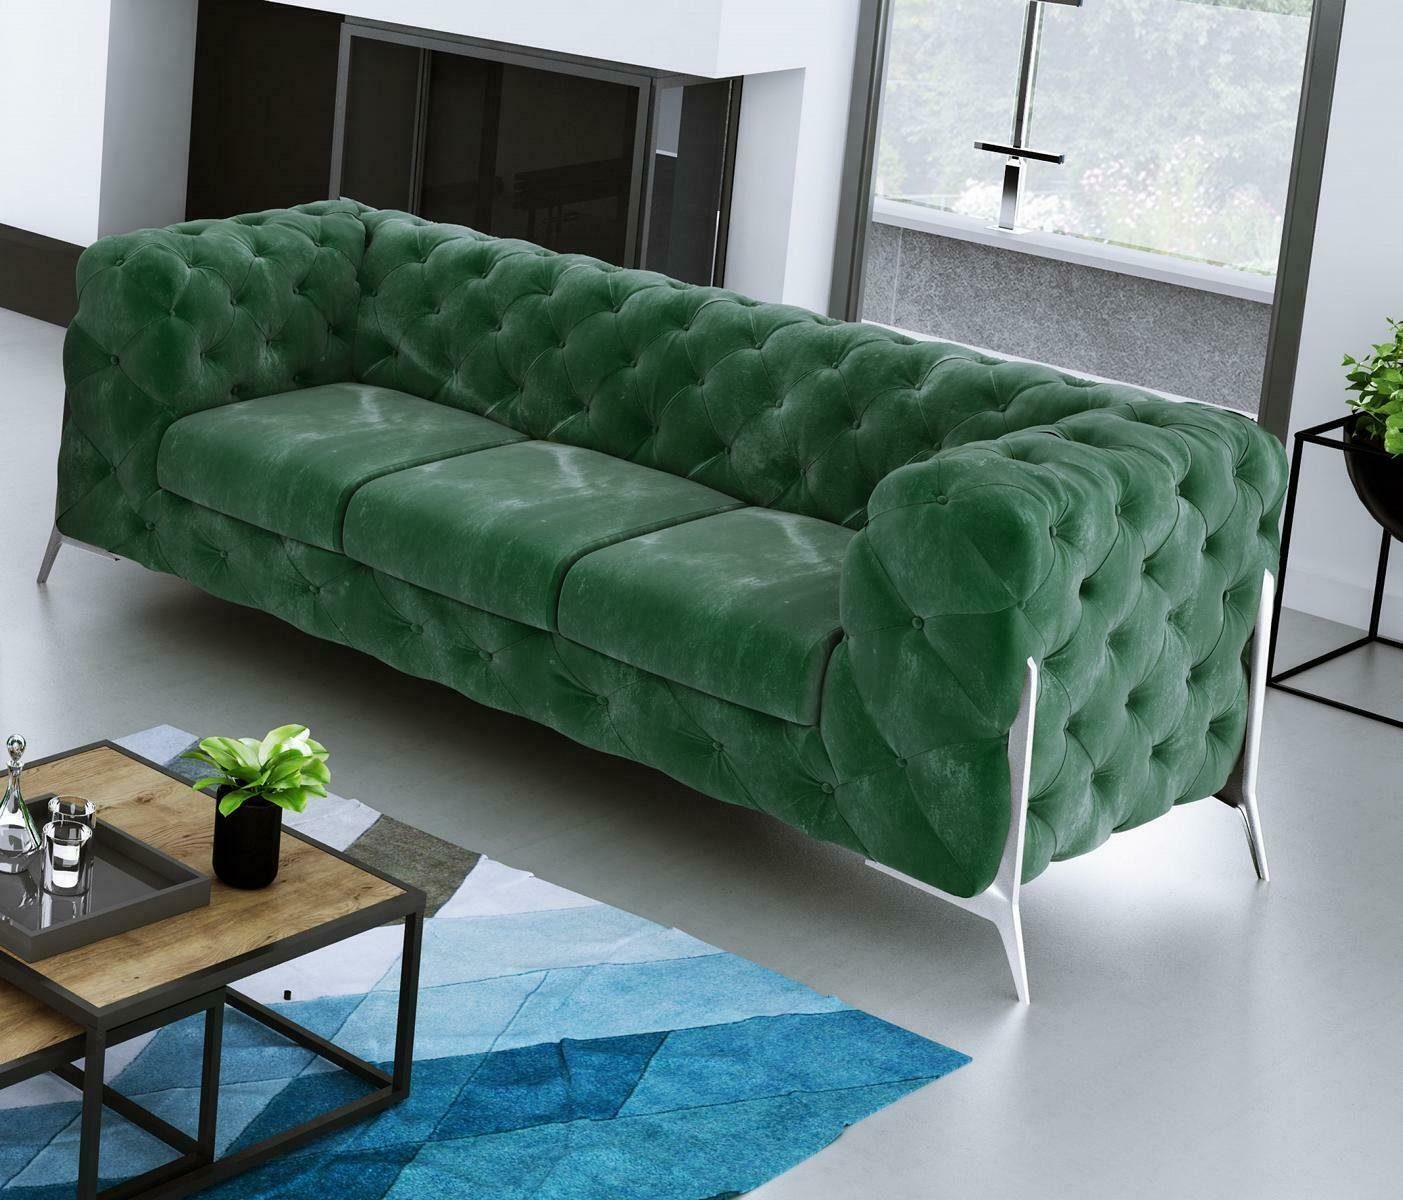 JVmoebel Sofa Moderner Brauner Chesterfield Dreisitzer Luxus Polster Couch Neu, Made in Europe Grün